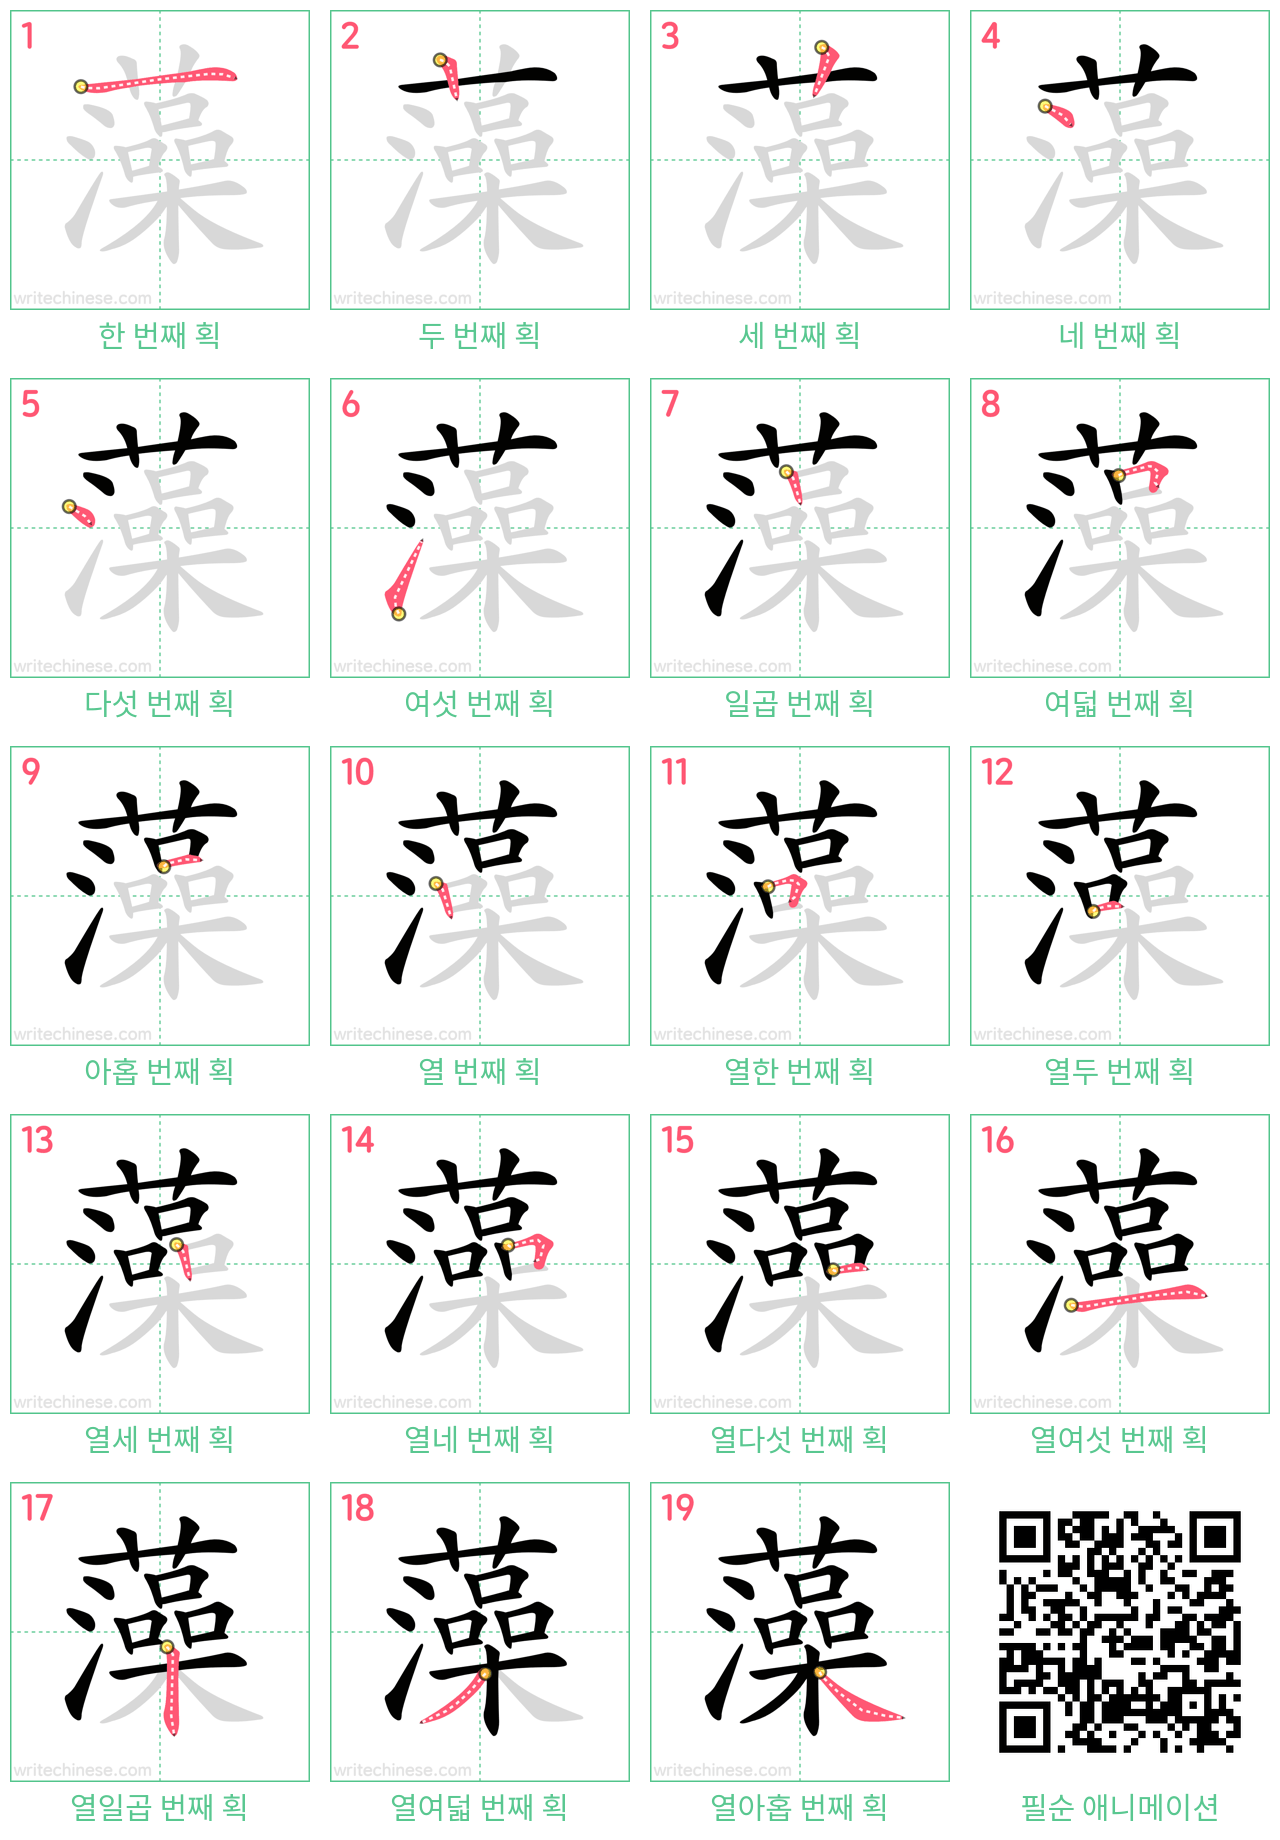 藻 step-by-step stroke order diagrams